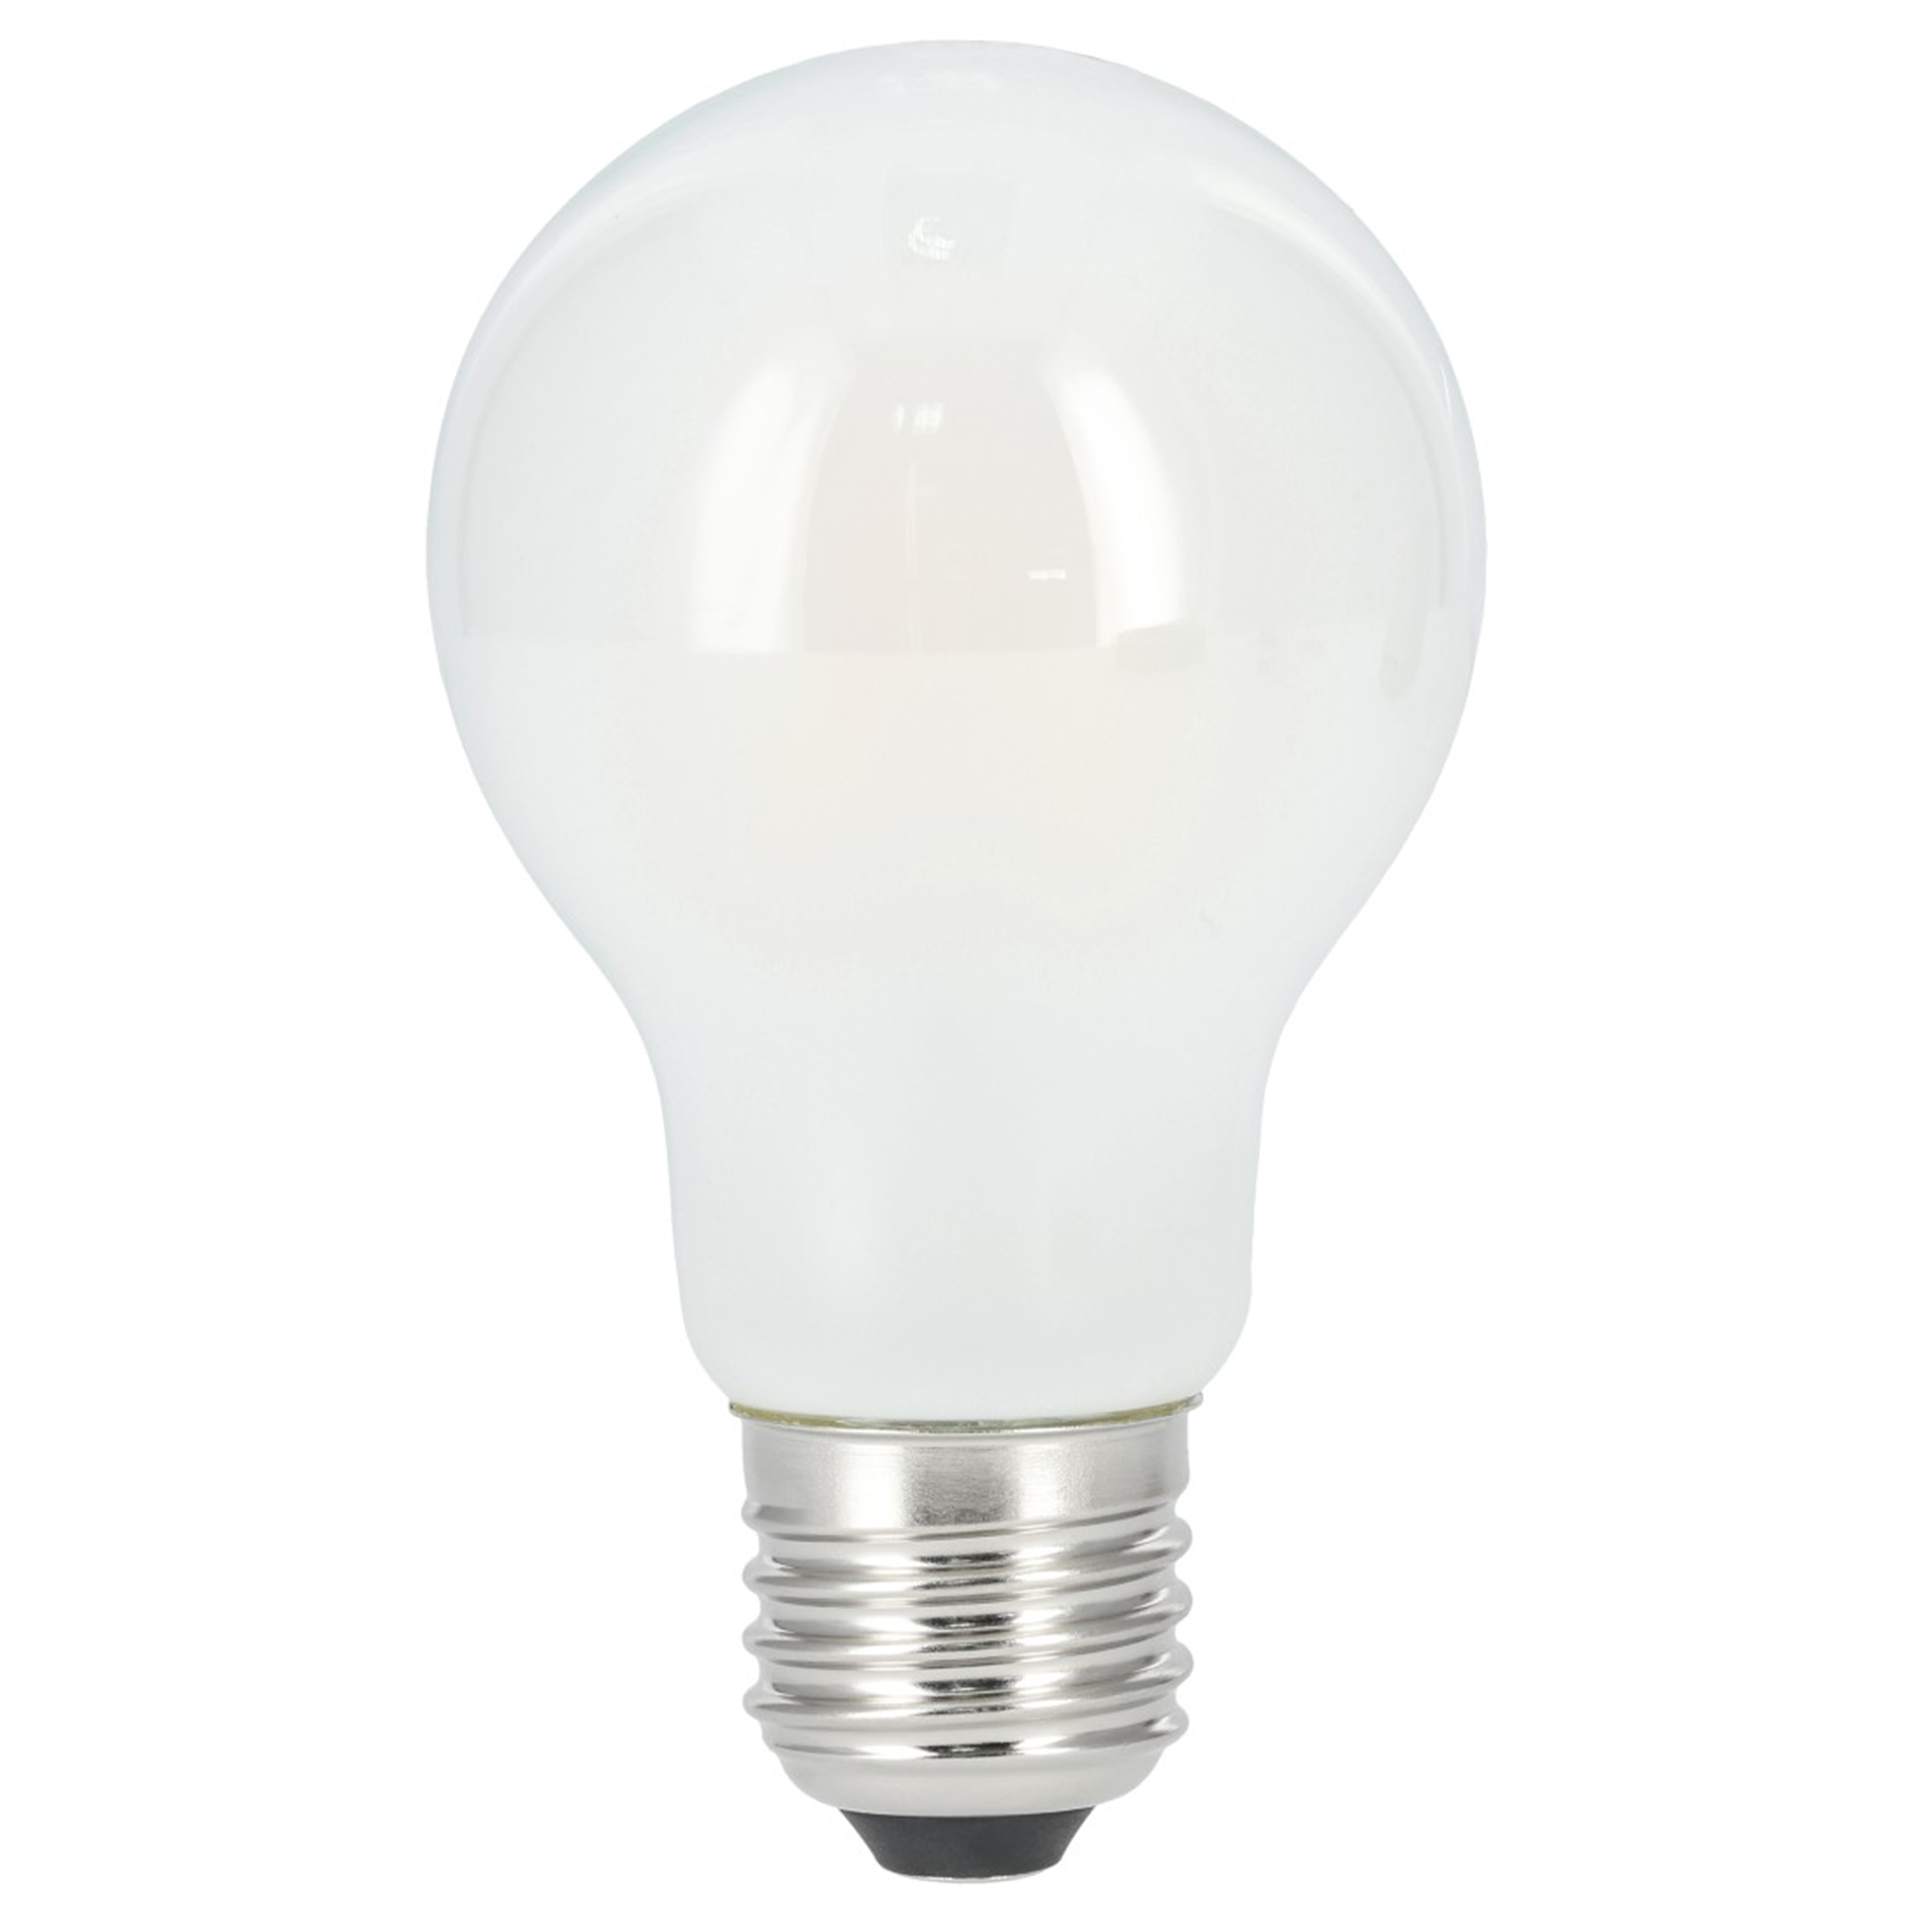 XAVAX 806lm LED-Lampe E27, 60W Warmweiß E27 ersetzt